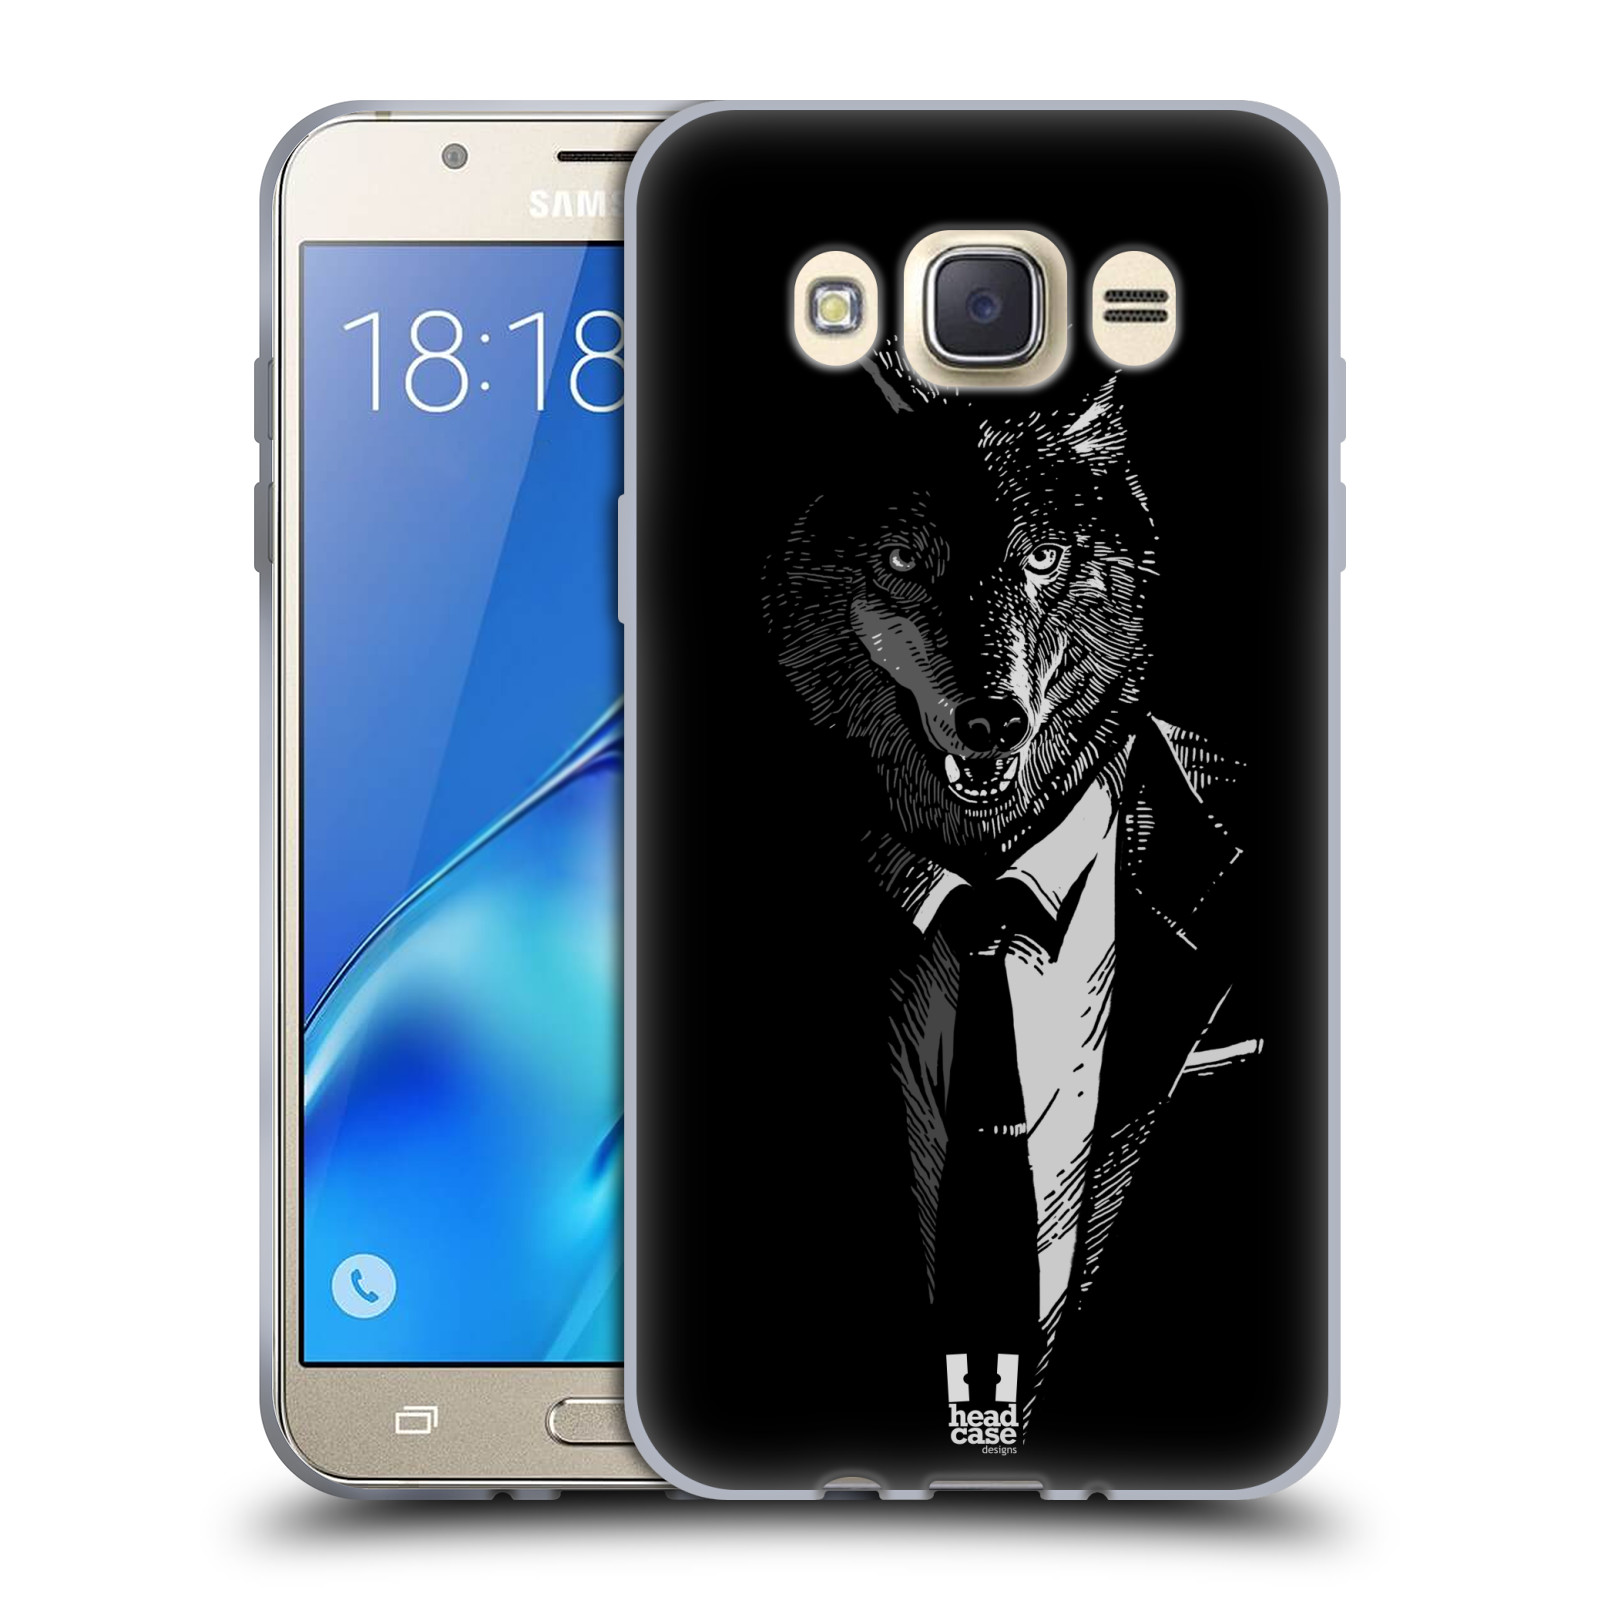 HEAD CASE silikonový obal, kryt na mobil Samsung Galaxy J7 2016 (J710, J710F) vzor Zvíře v obleku vlk